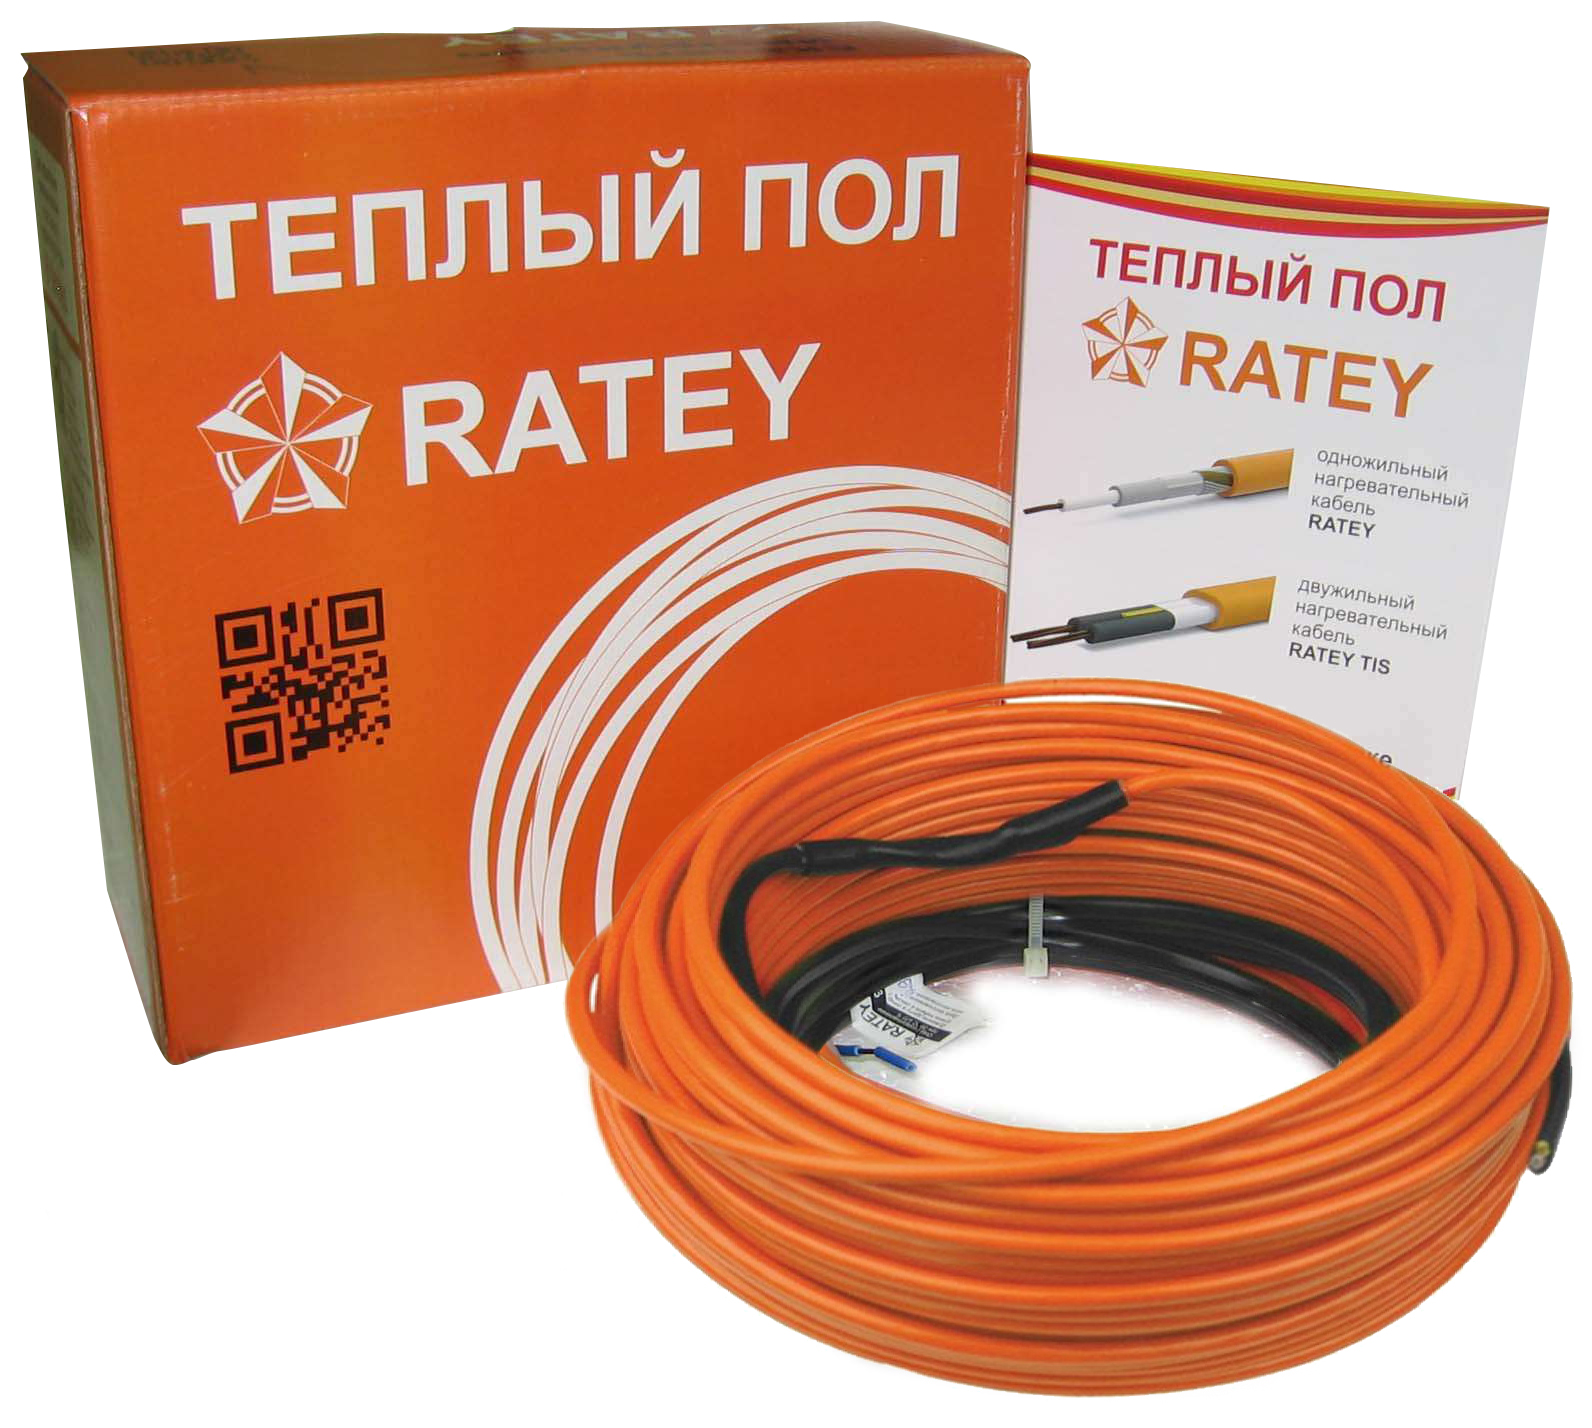 Тепла підлога Ratey під ламінат Ratey RD1 0.485